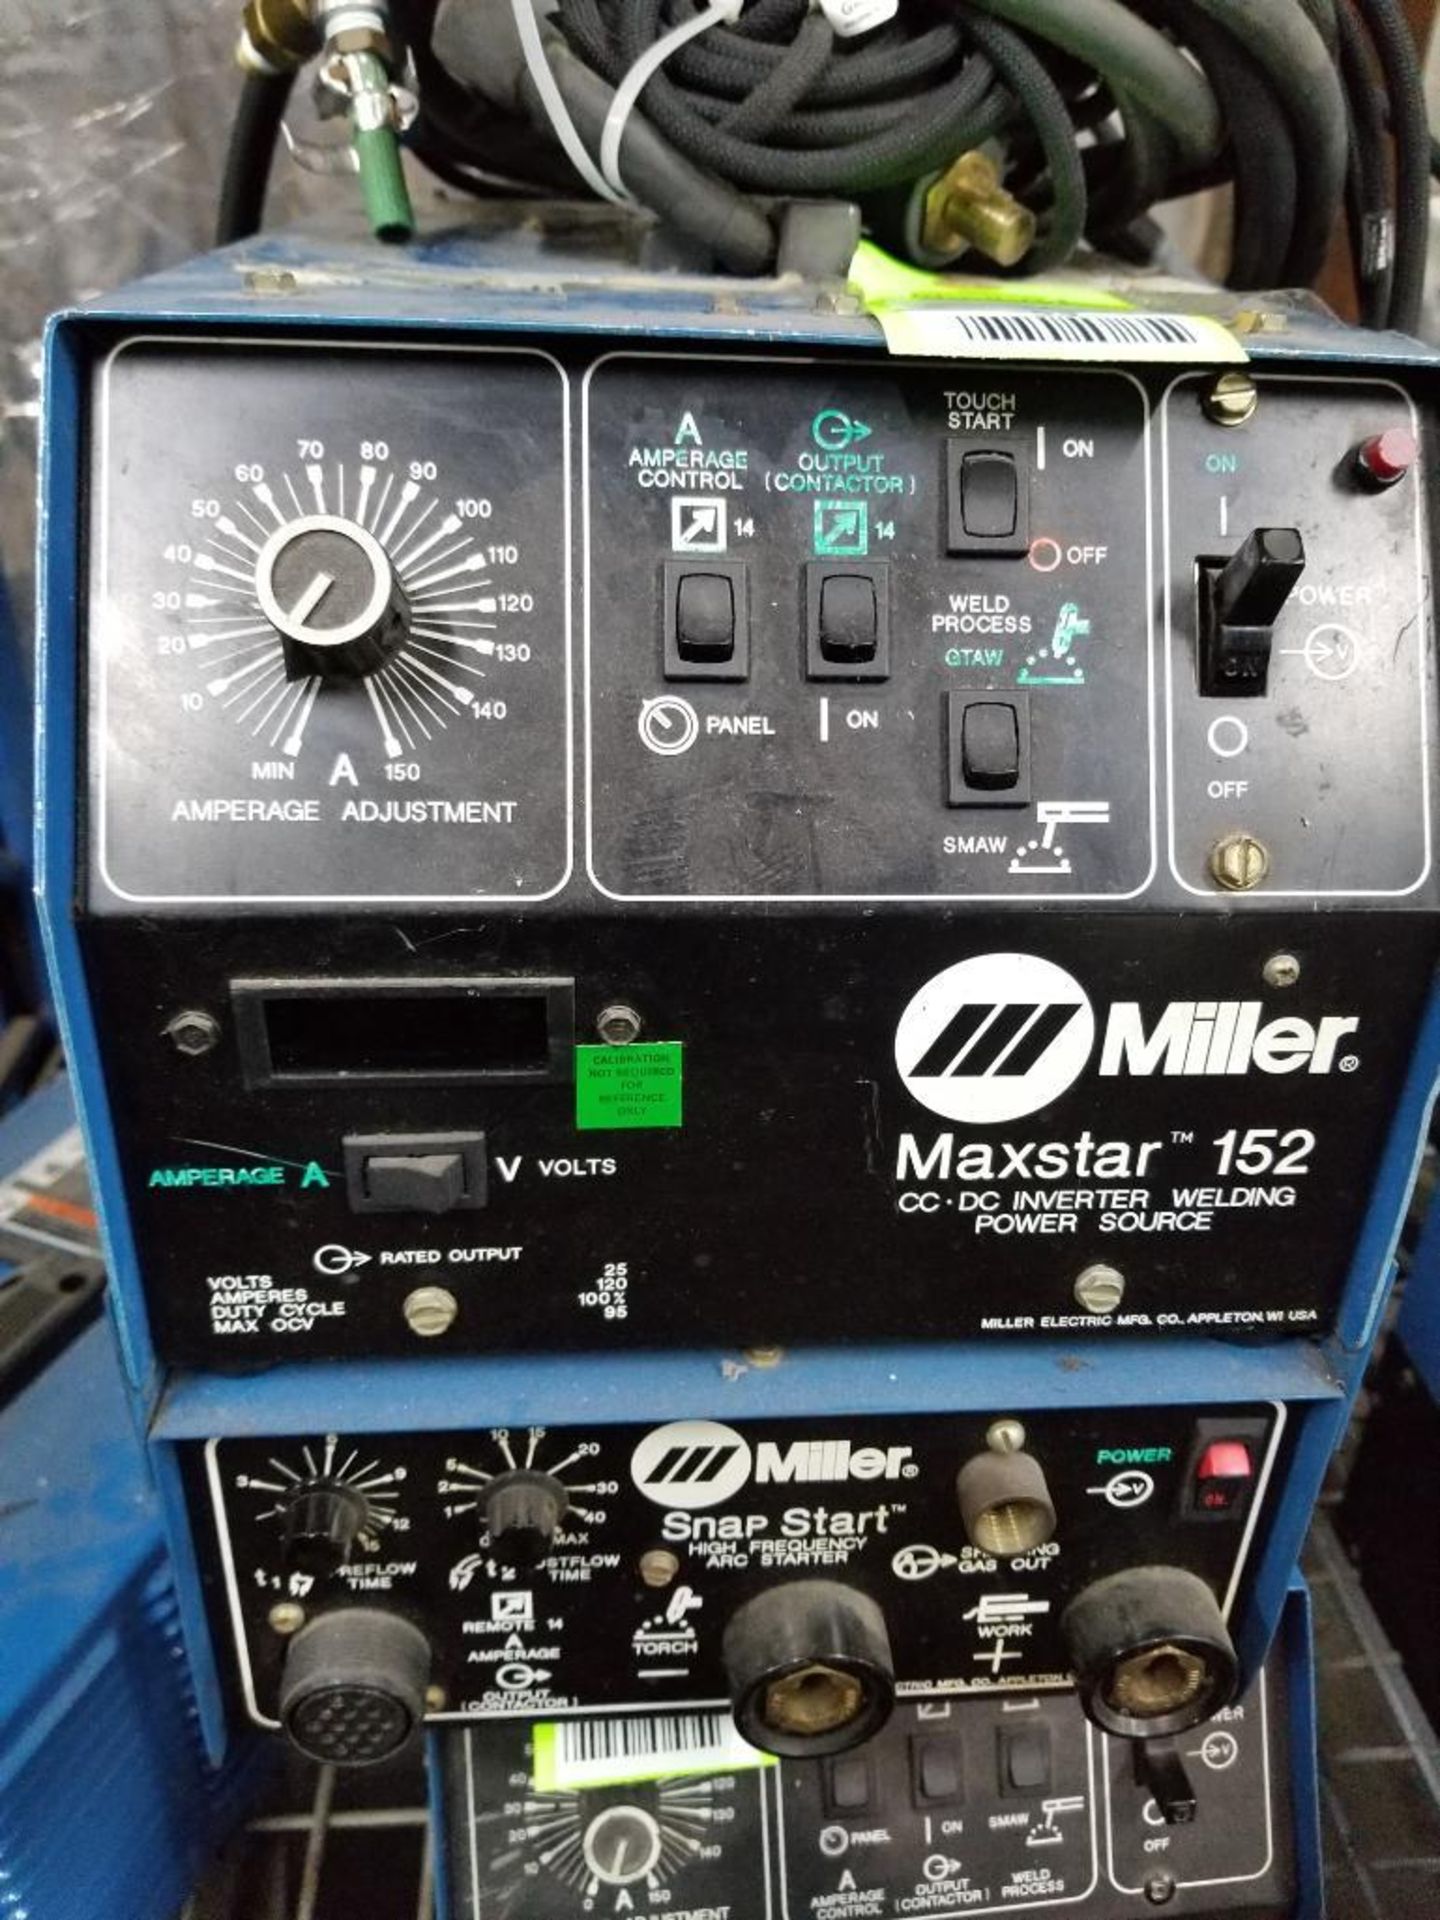 Miller Maxstar 152 CC/DC inverter welding power source. 115/230v single phase. Snapstart. - Image 2 of 3